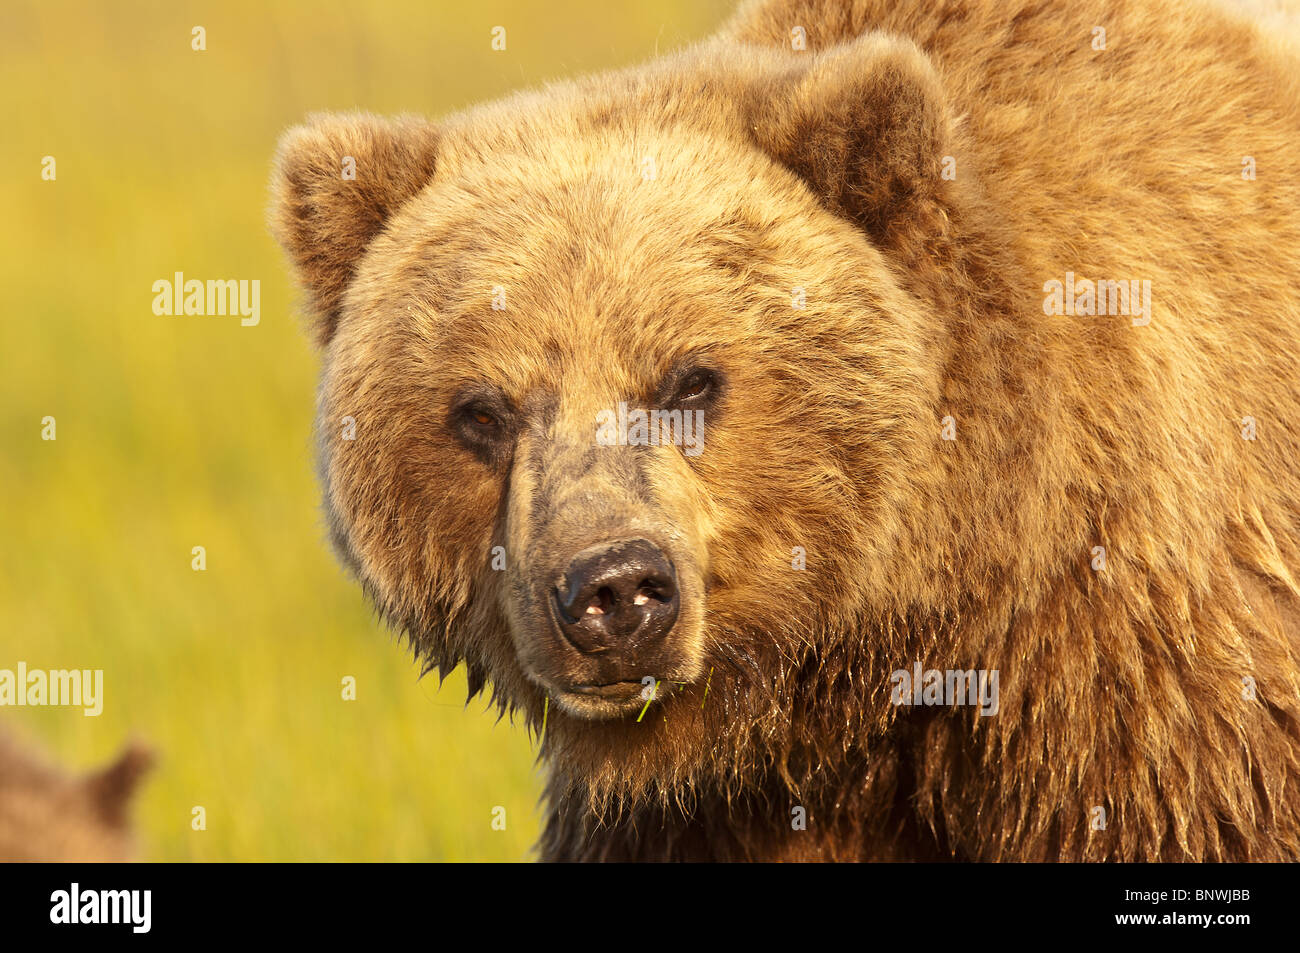 Stock photo closeup immagine di un alaskan coastal orso bruno in un prato nella luce dorata del tramonto Foto Stock